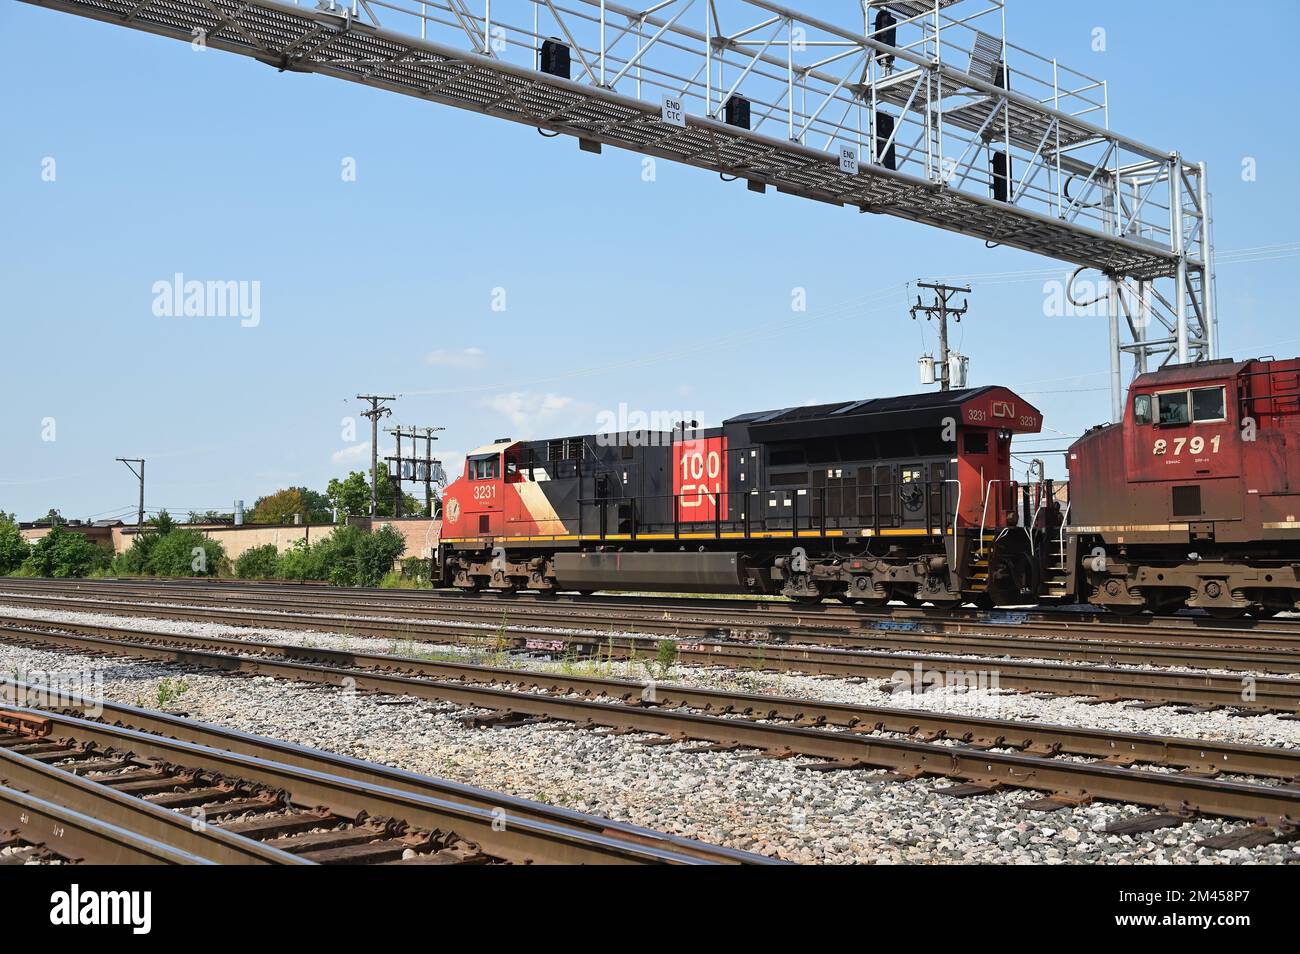 Franklin Park, Illinois, USA. Lokomotiven, angeführt von einer kanadischen Eisenbahneinheit, treiben einen Güterzug in Richtung eines Bahnhofs an. Stockfoto